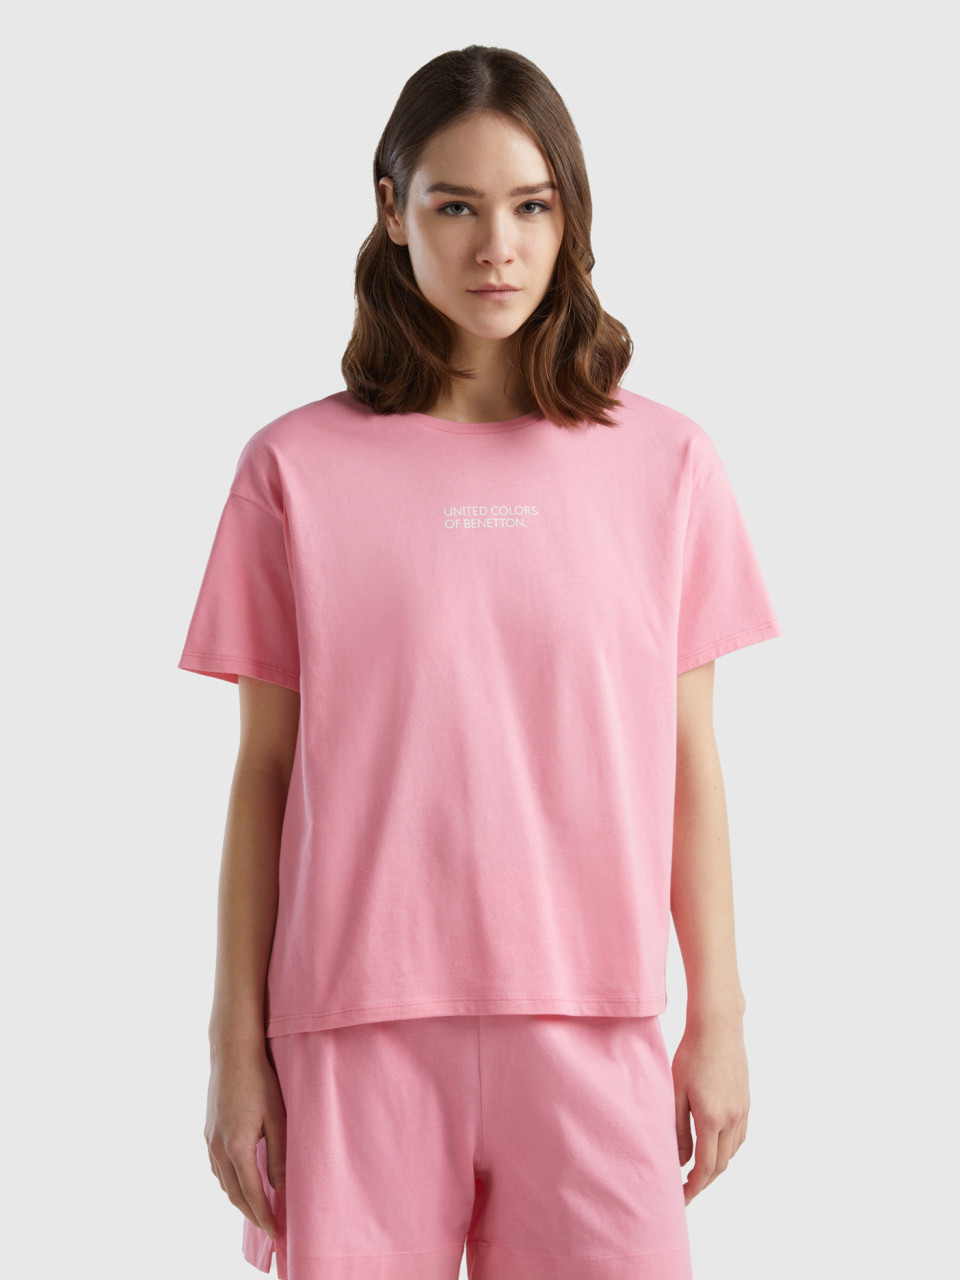 Benetton, Short Sleeve T-shirt With Logo, Pink, Women